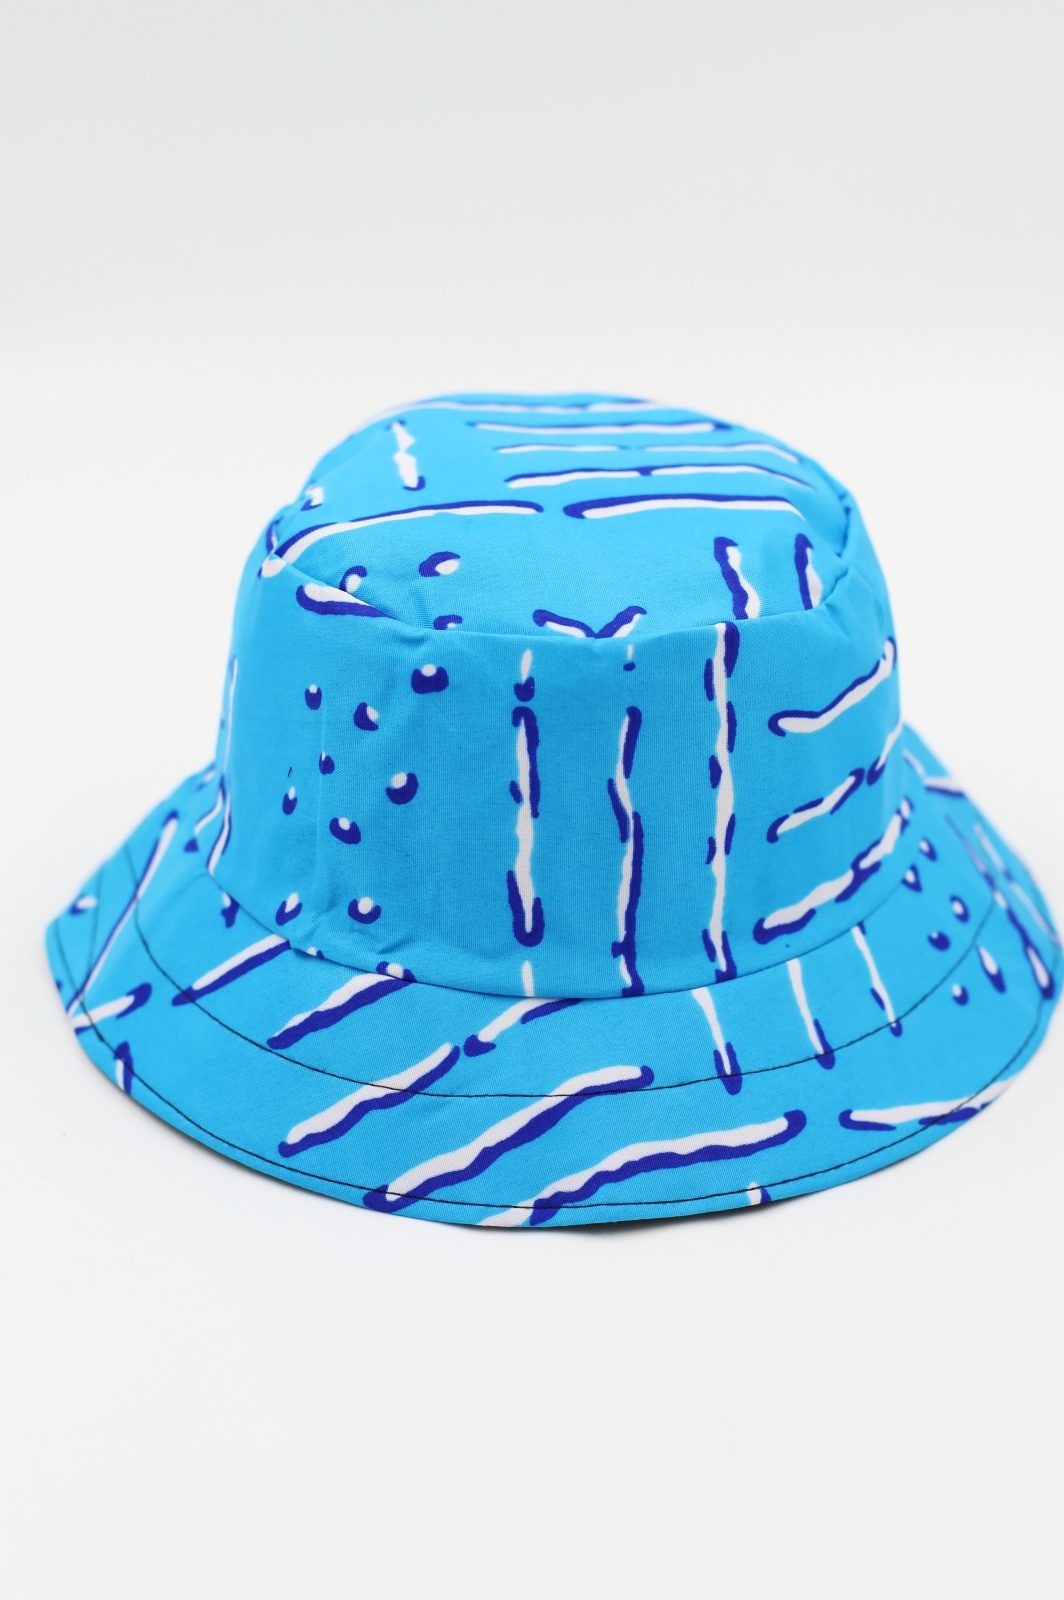 kapelusik na lato kapelusz kolorowy niebieski